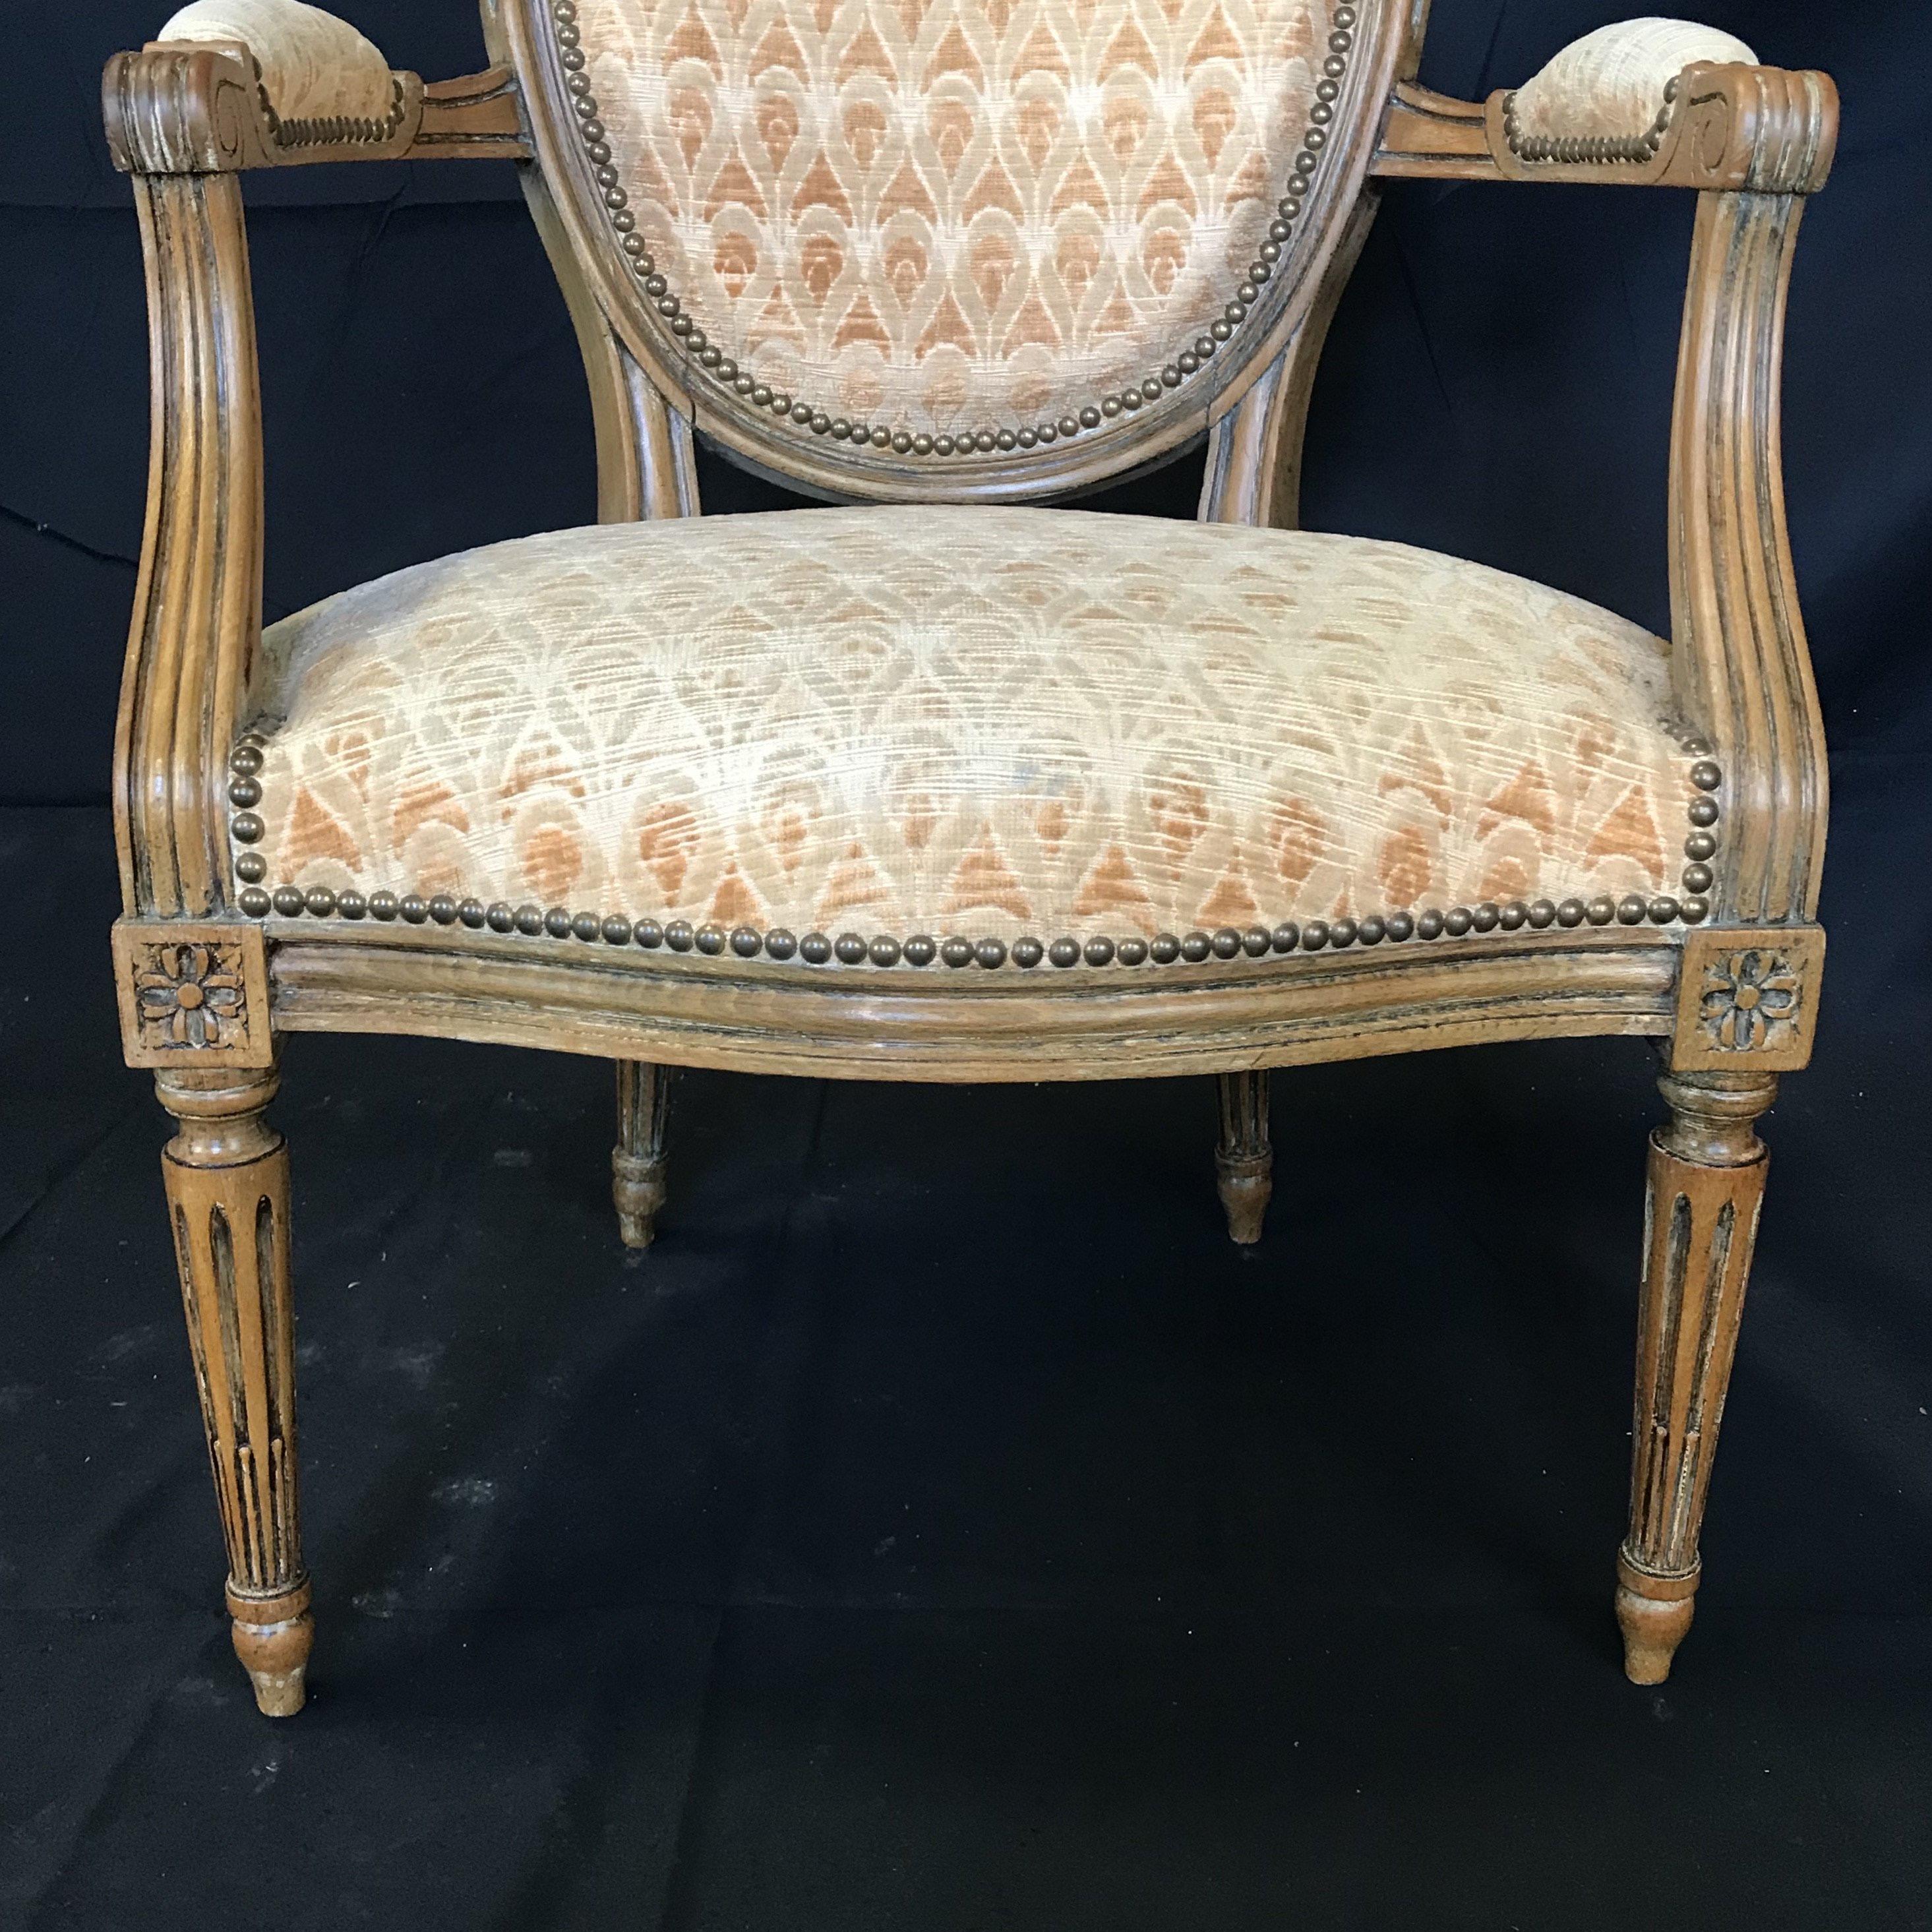 Schönes Paar Louis XVI Sessel oder fauteuils mit ihrer ursprünglichen blassgoldenen Polsterung in sehr gutem Zustand! Eine großartige Größe für Akzentstühle, Sessel oder Esszimmerstühle mit Endakzenten.
#4768.
   